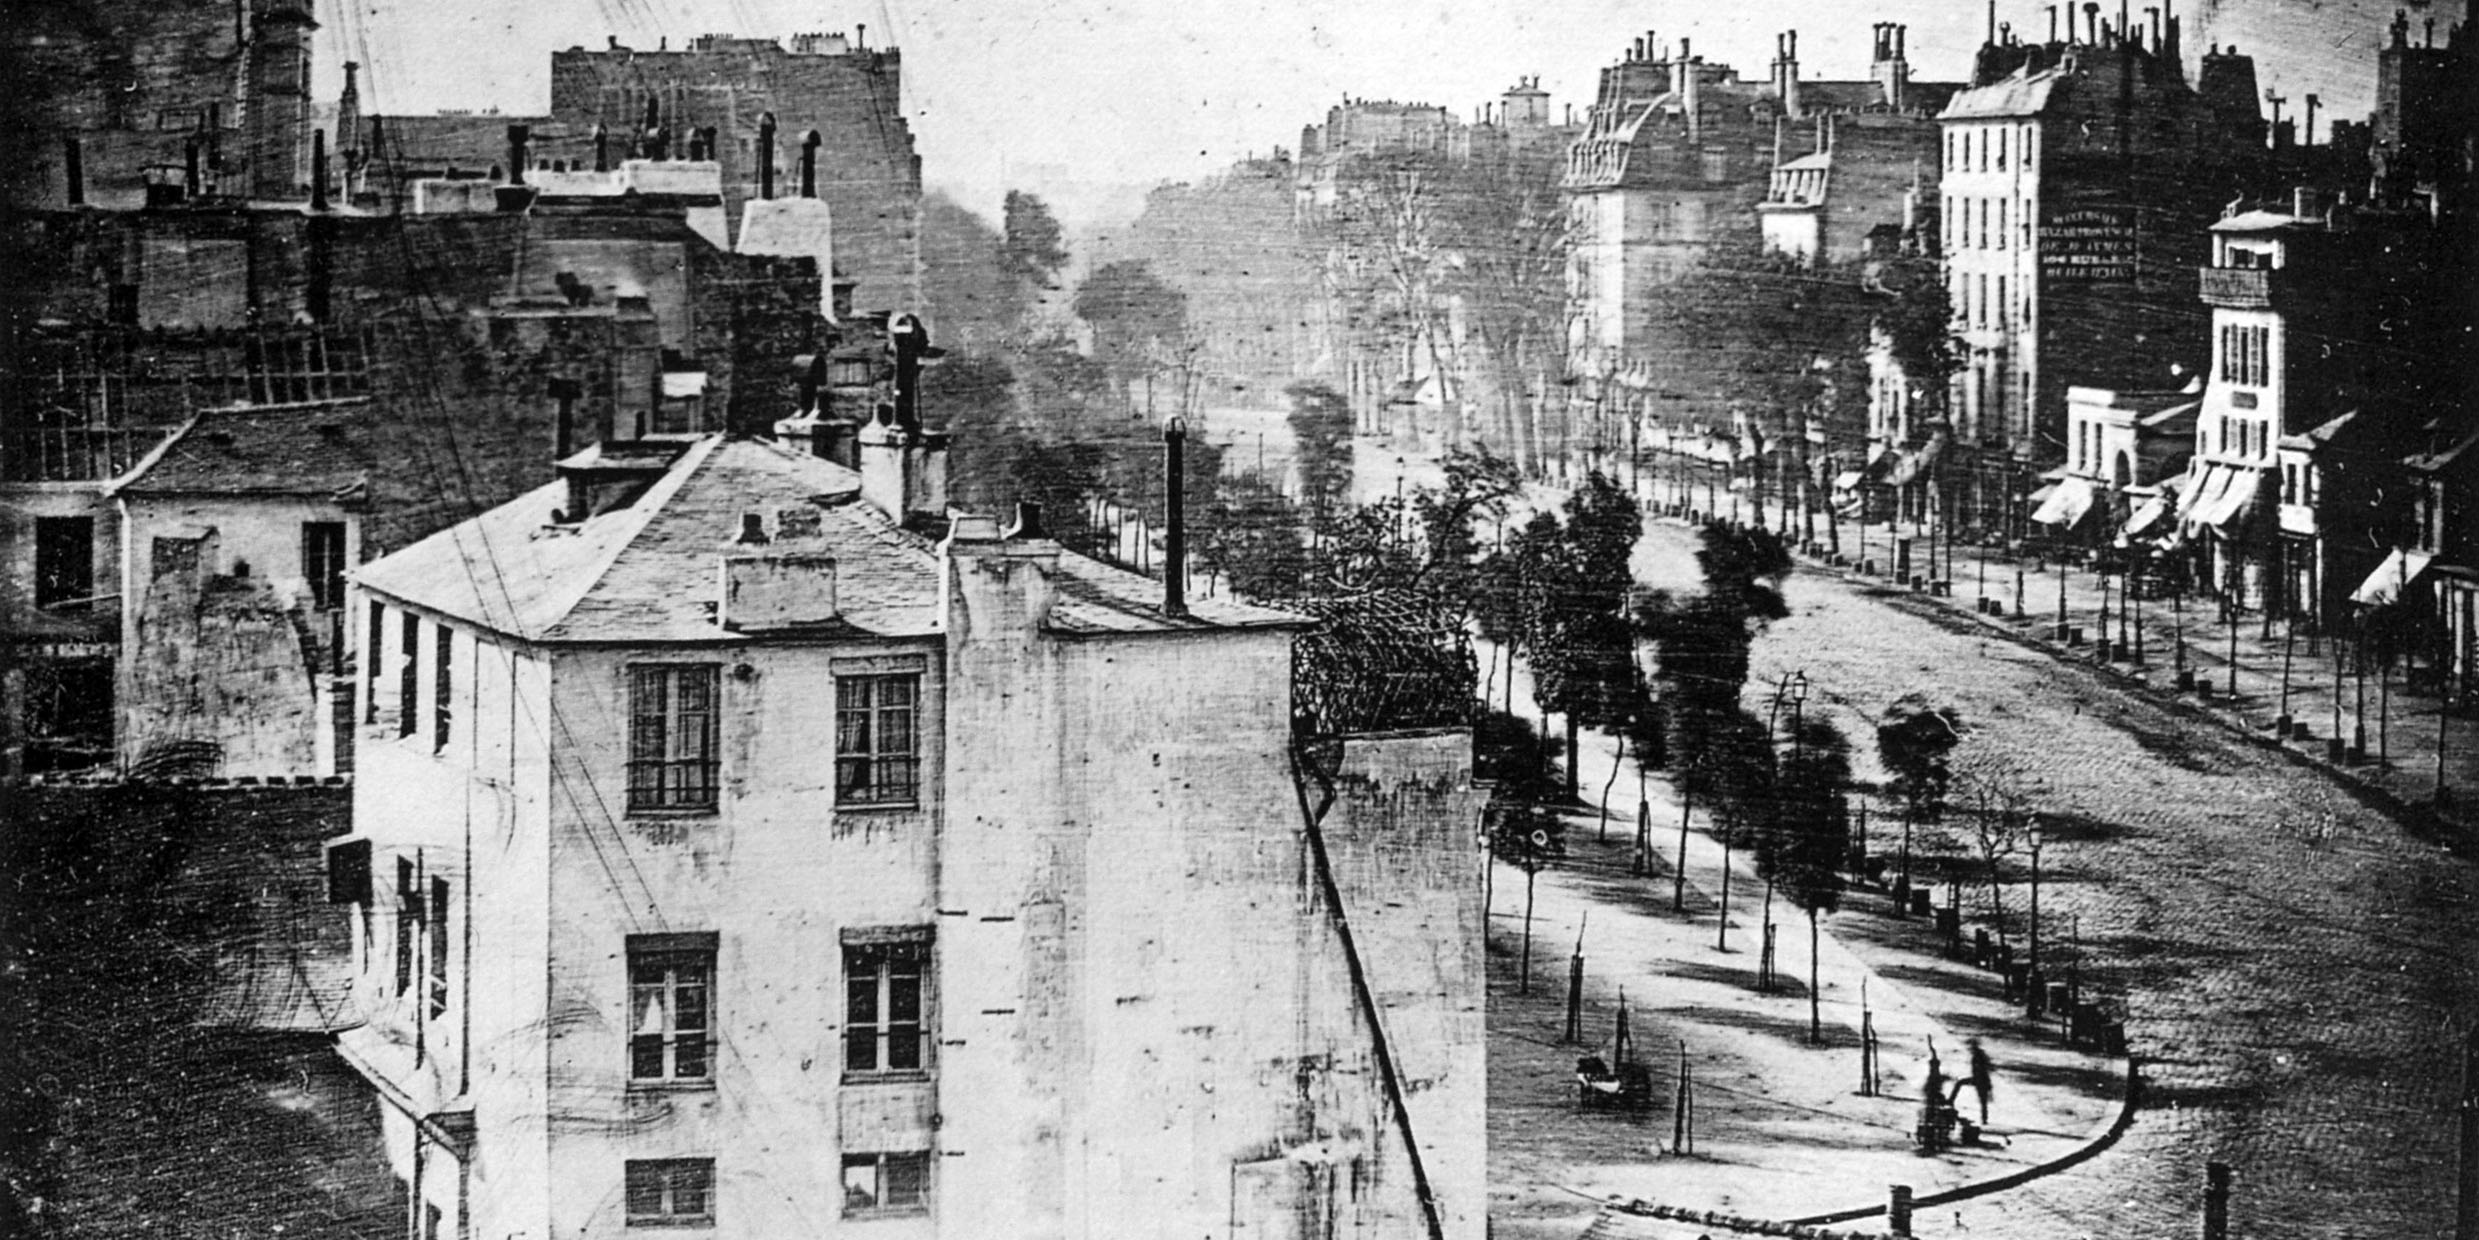 Photograph of Paris street by Louis Daguerre